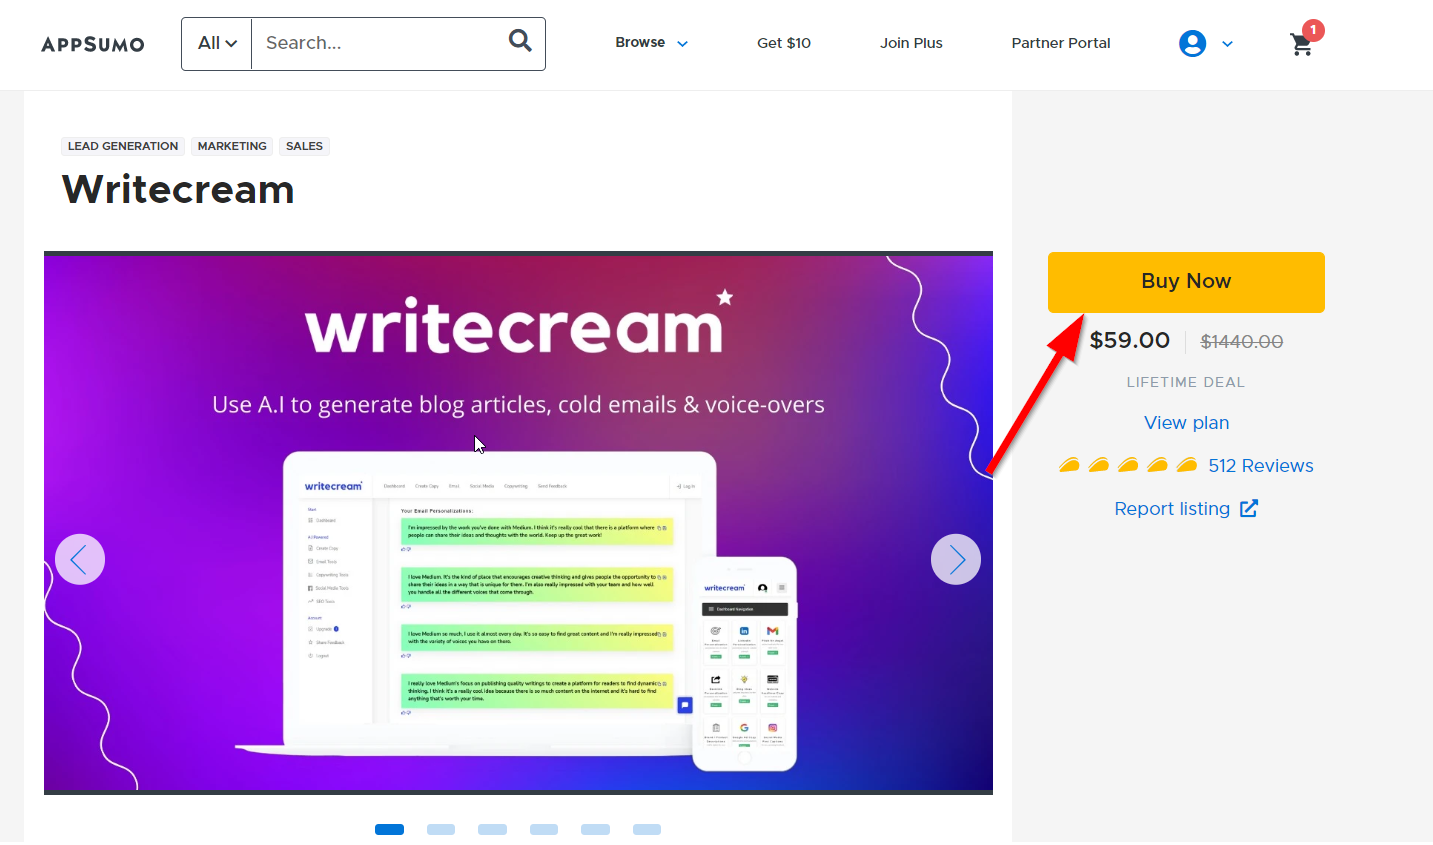 Writecream Lifetime Deal On AppSumo Buy Now